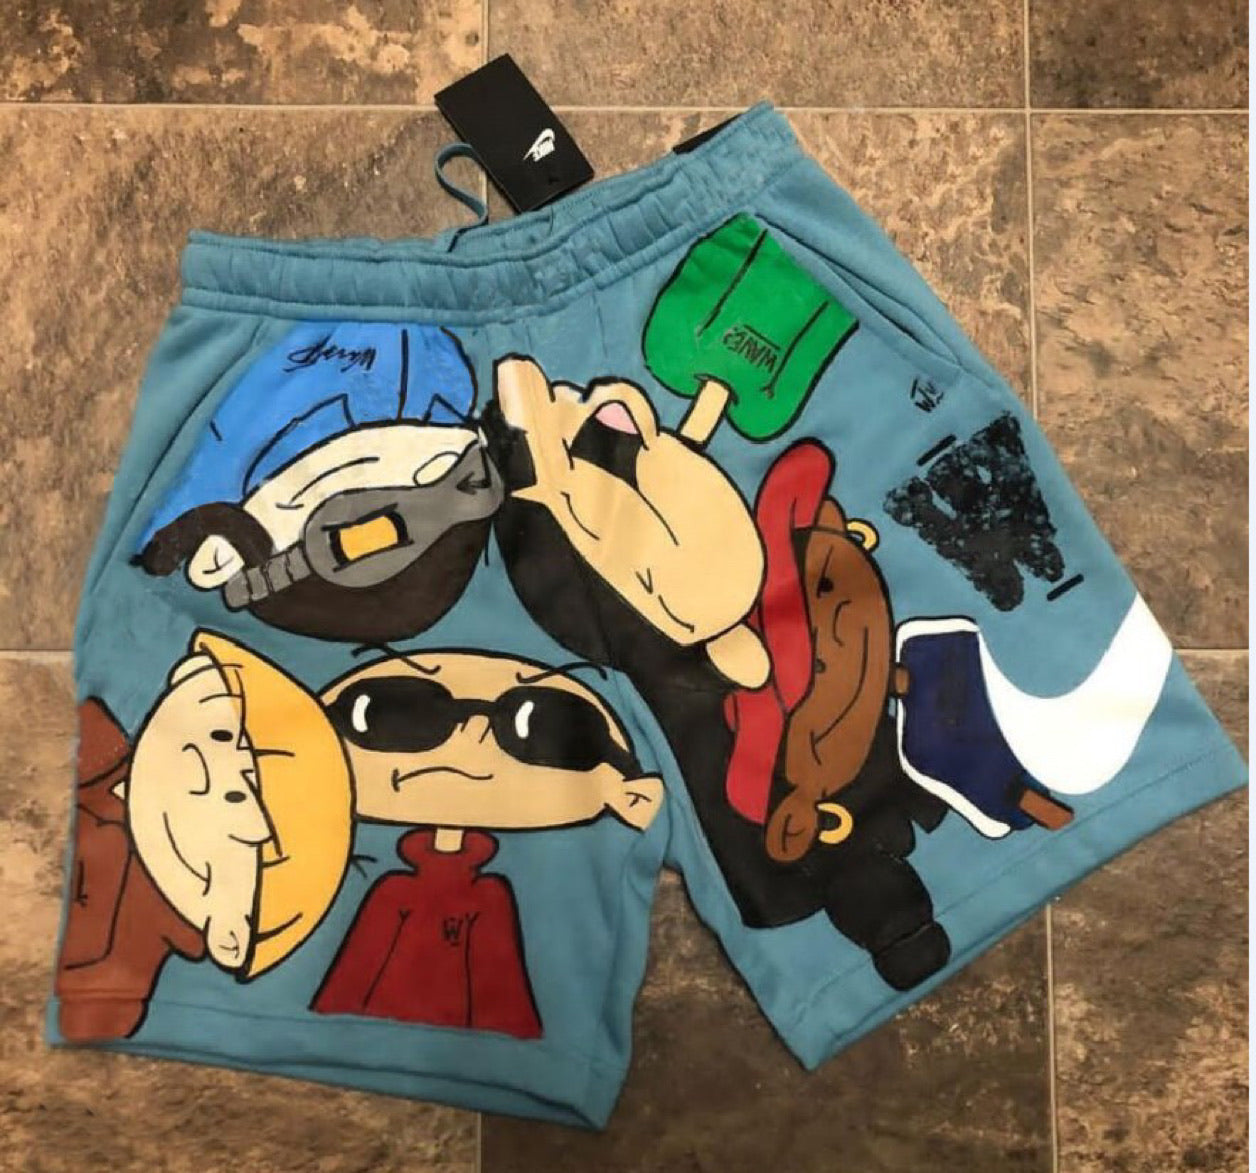 Kids Next Door Custom Shorts